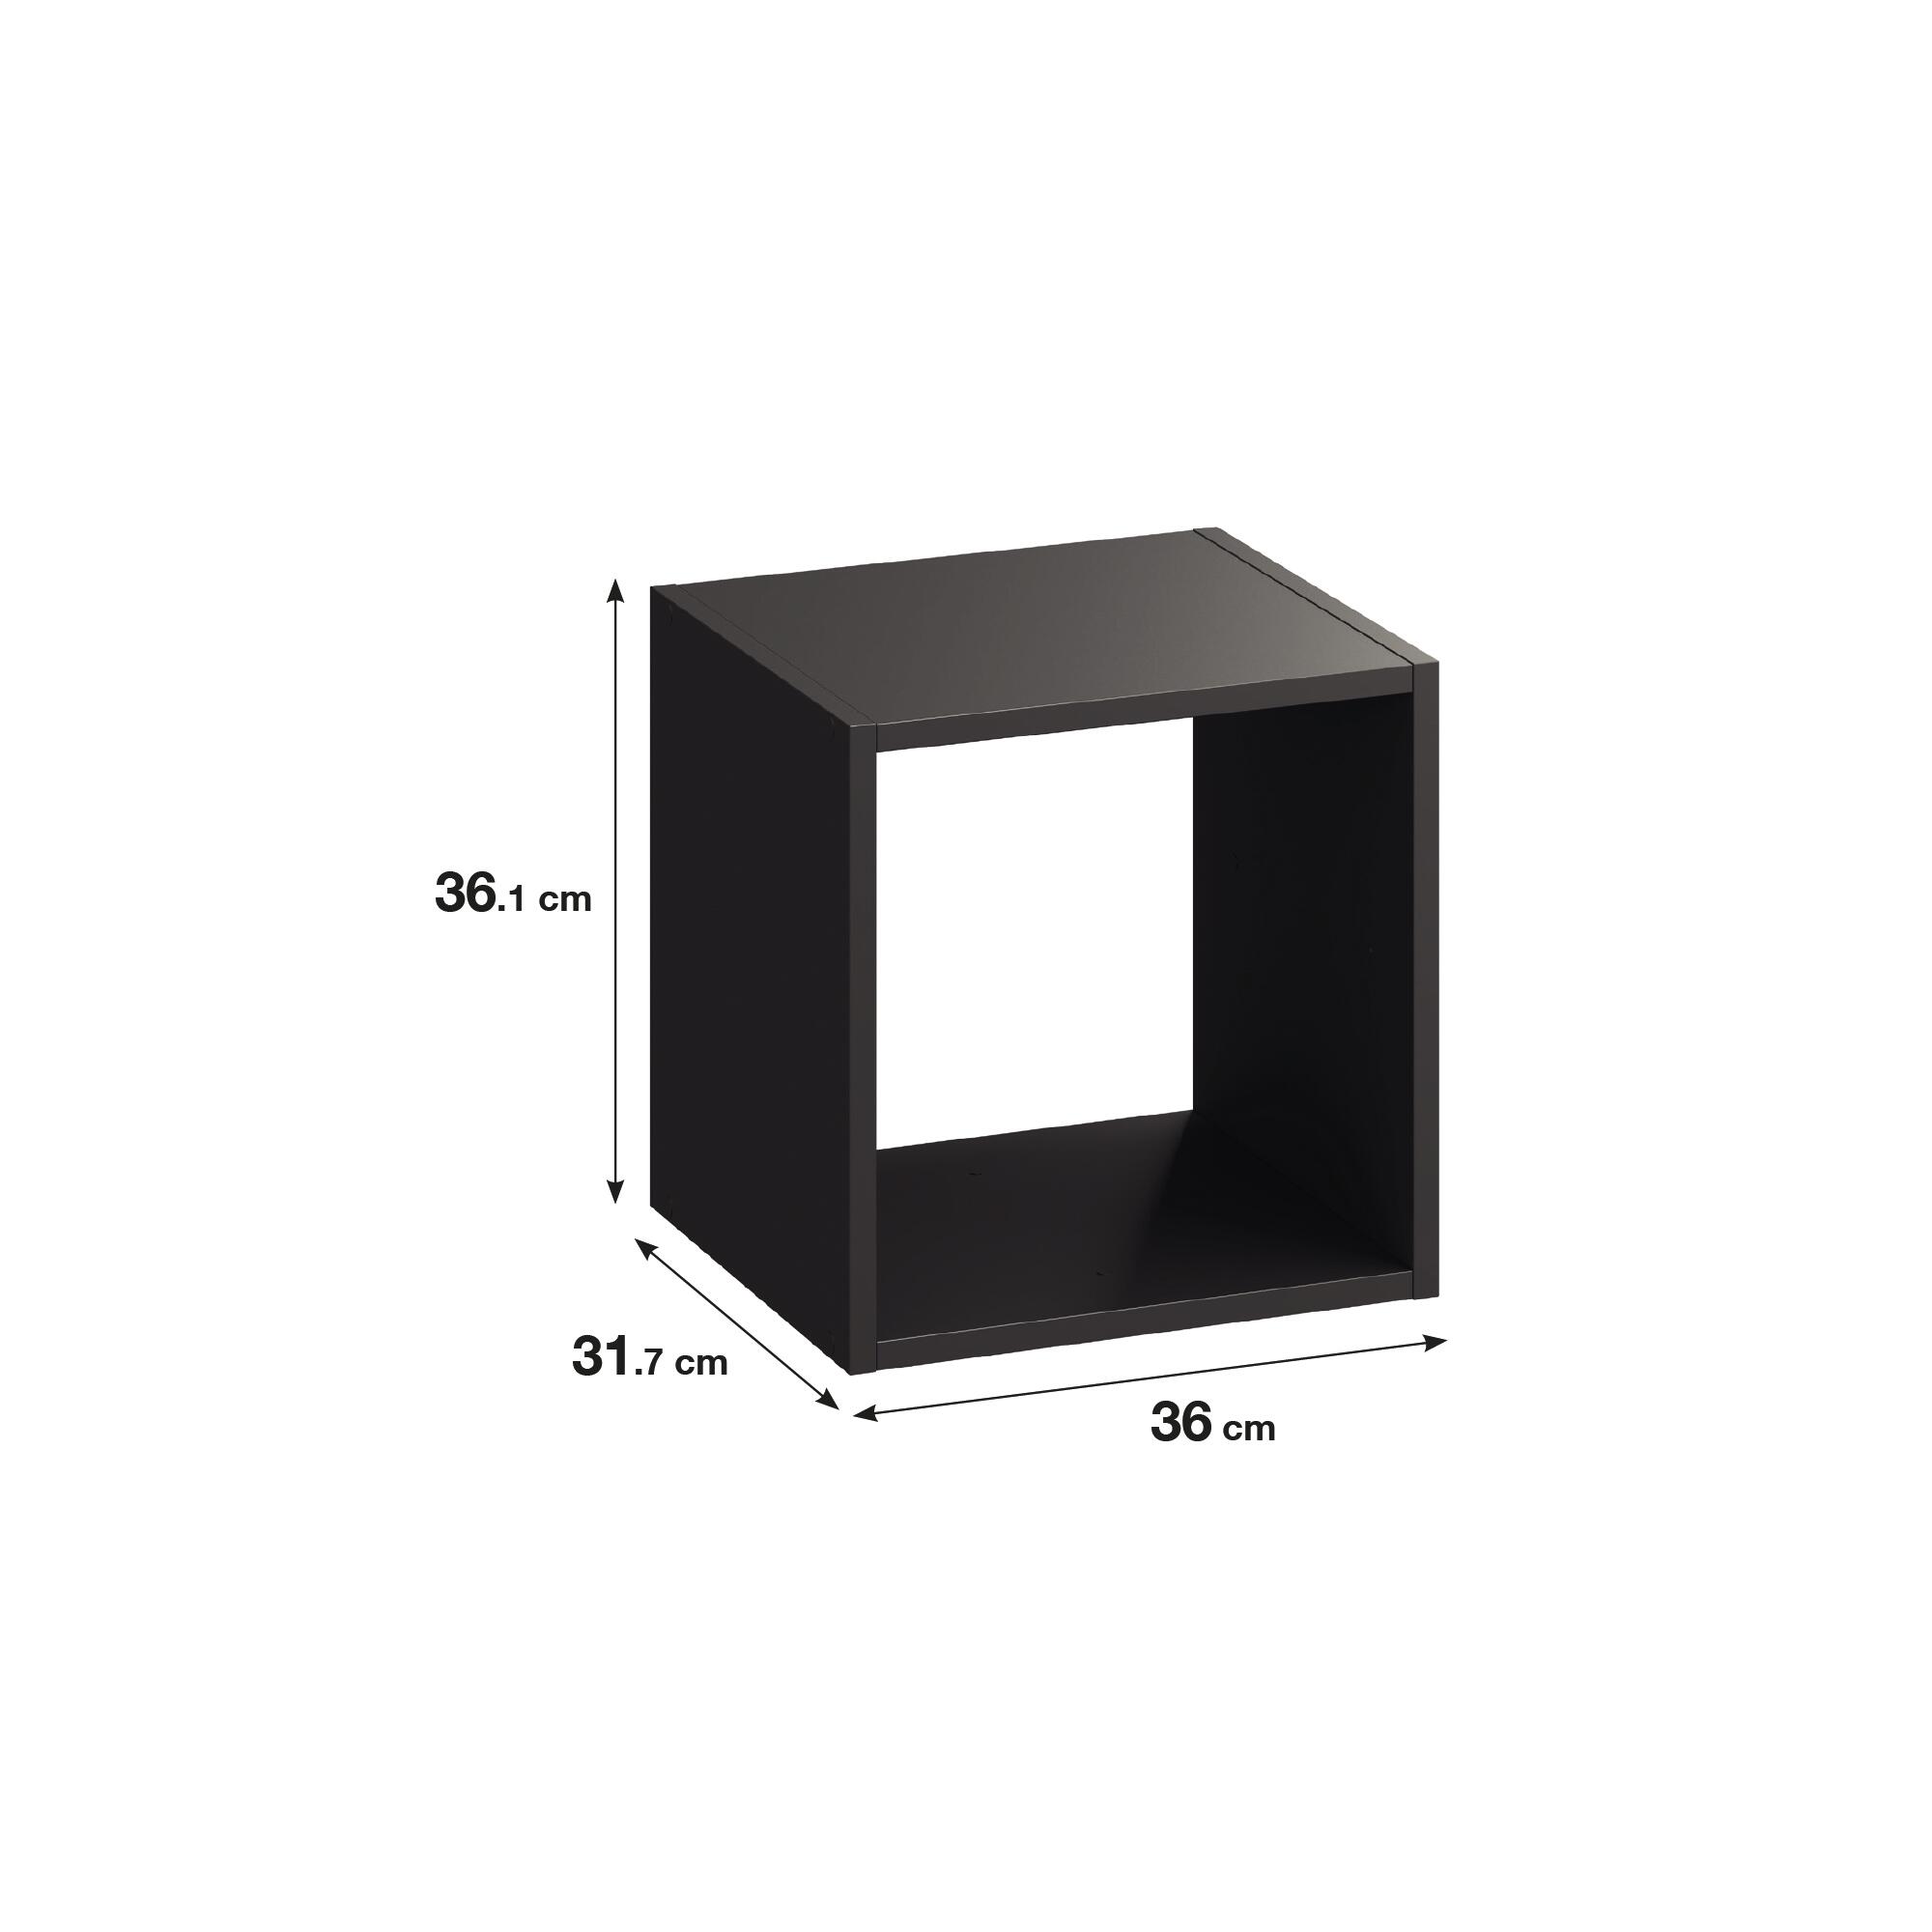 Estantería SPACEO KUB 1 cubo gris 36x36x31.7cm